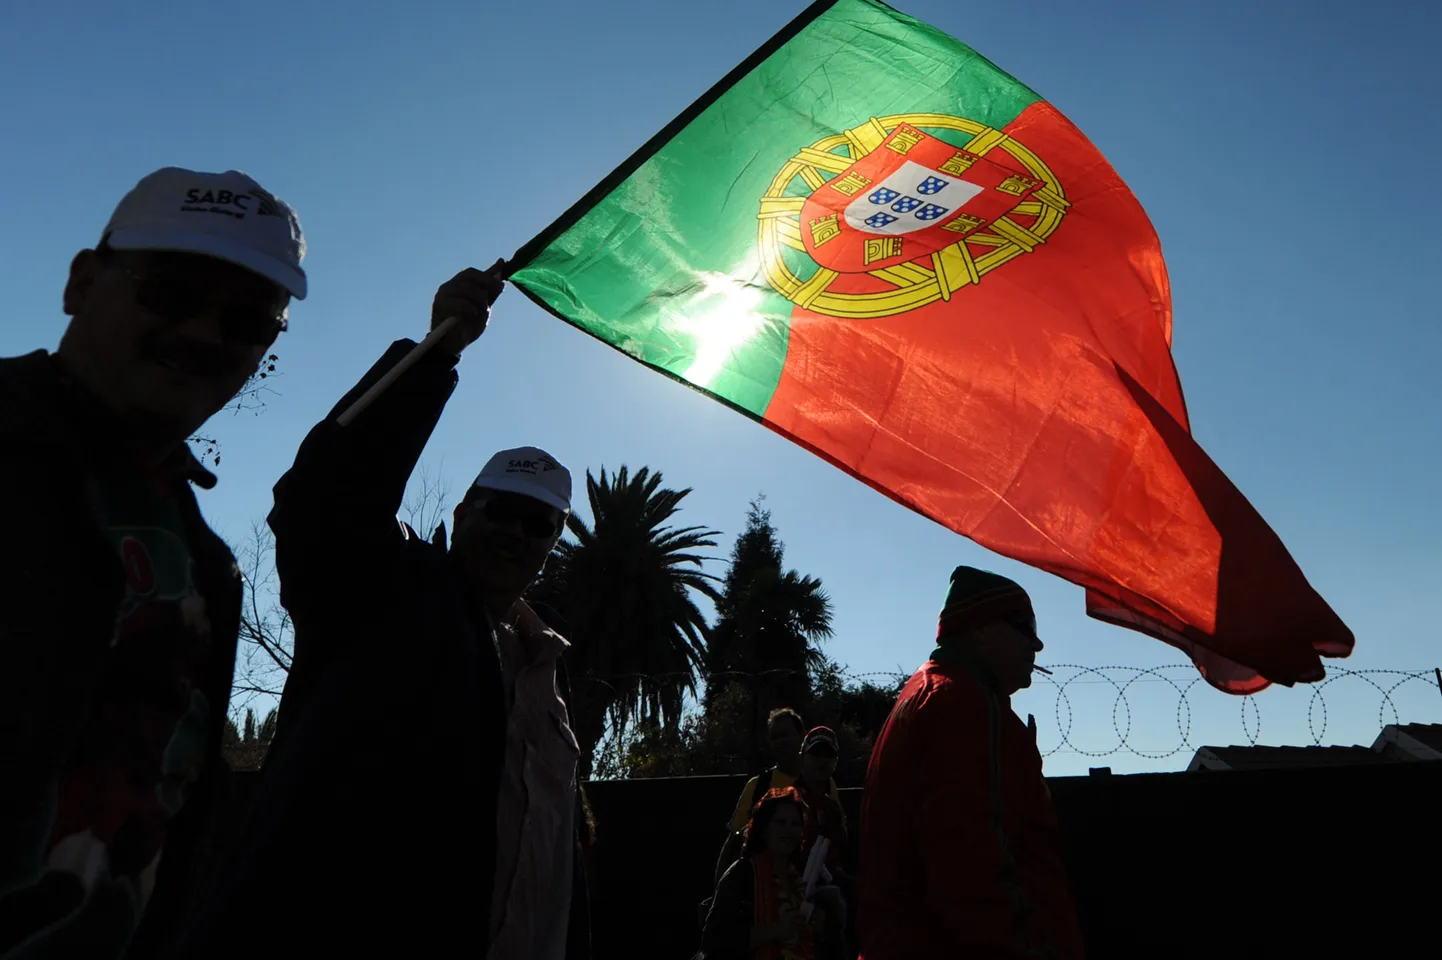 Portugali lipp